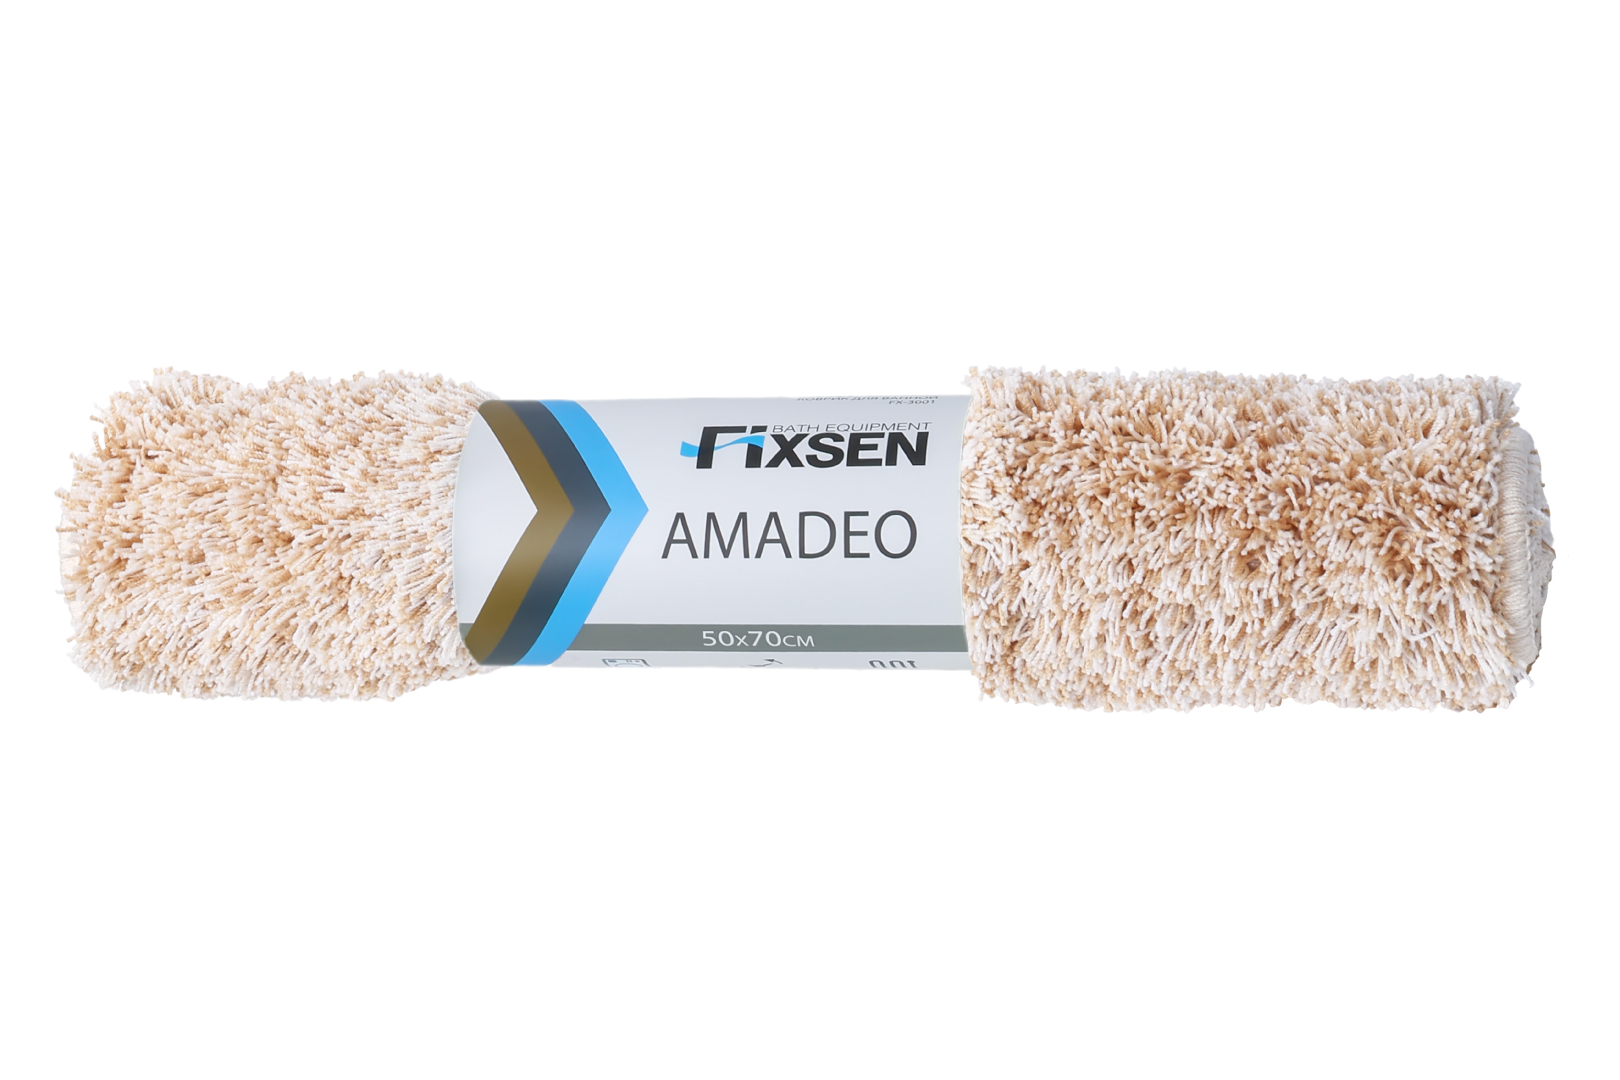 Коврик для ванной Fixsen Amadeo 1-ый бежевый, 50х70 см. FX-3001A